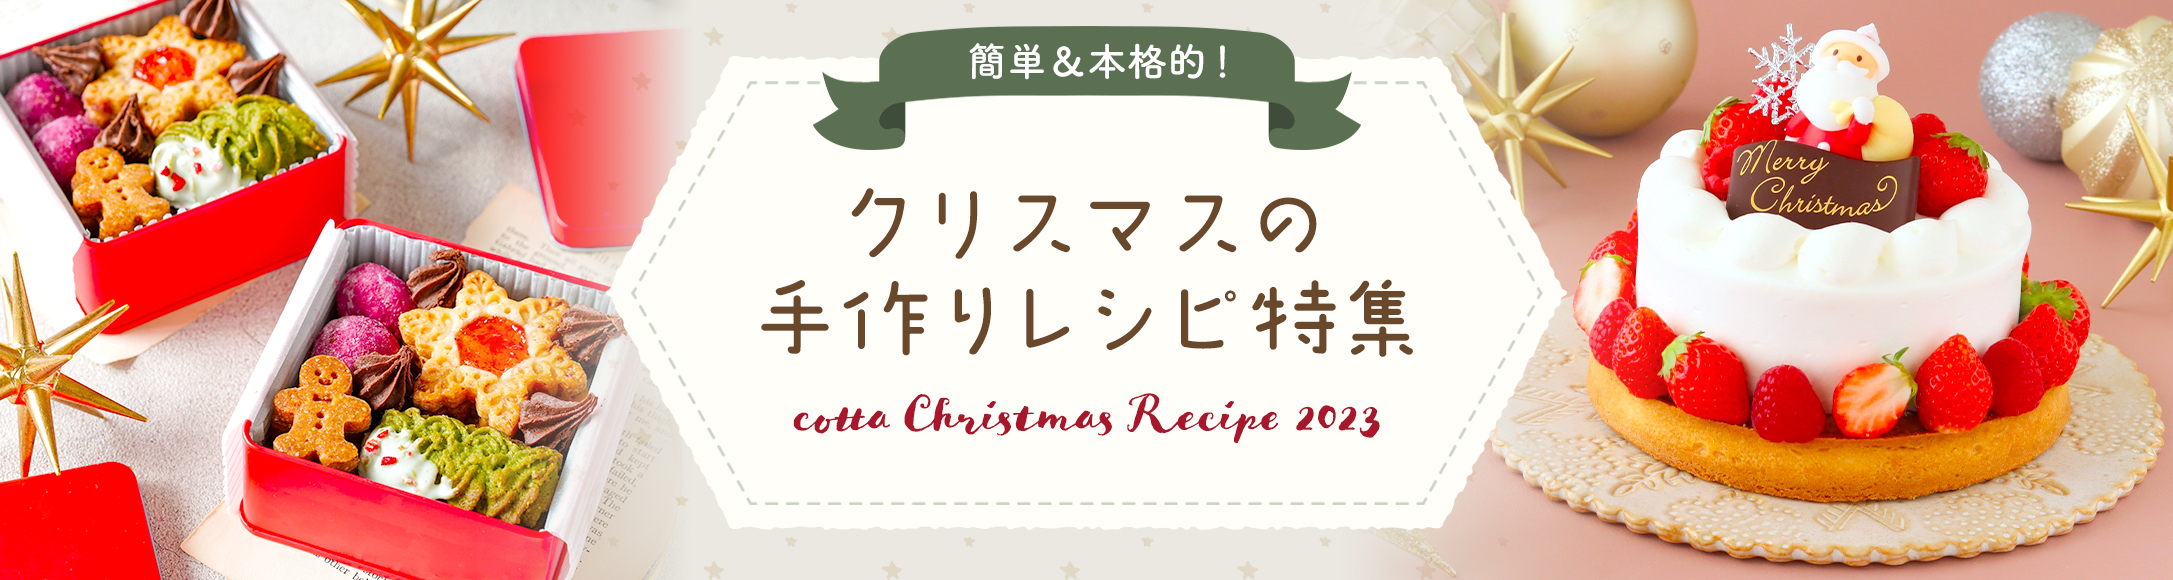 コッタ 【簡単・豪華】厳選クリスマスケーキ&お菓子レシピ